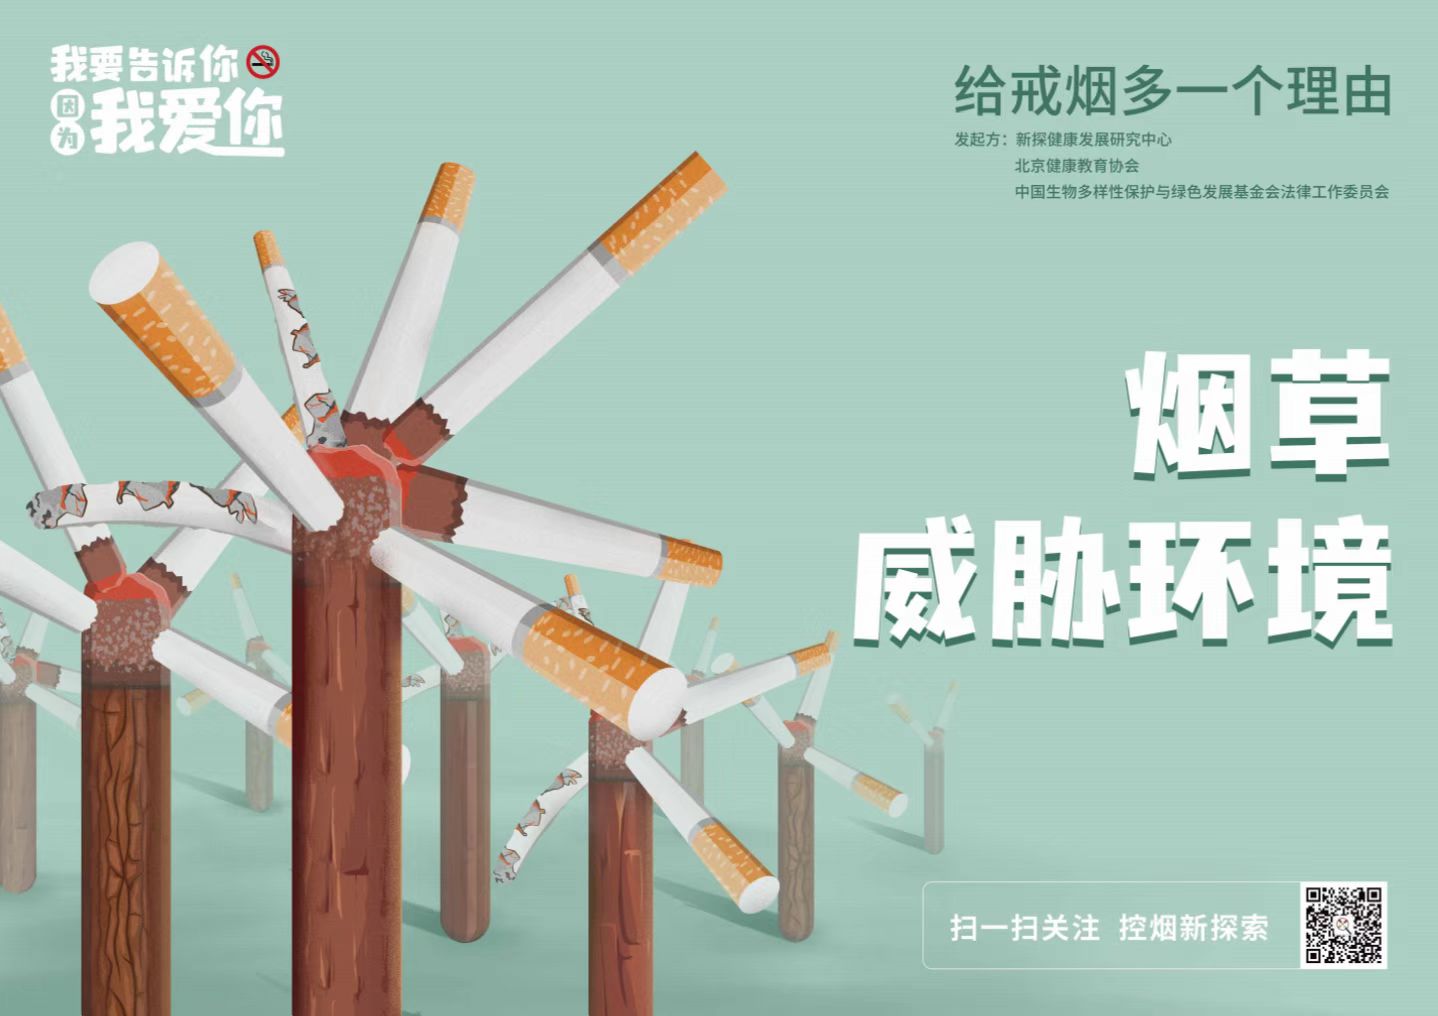 2022年世界无烟日“烟草威胁环境———给戒烟多一个理由”